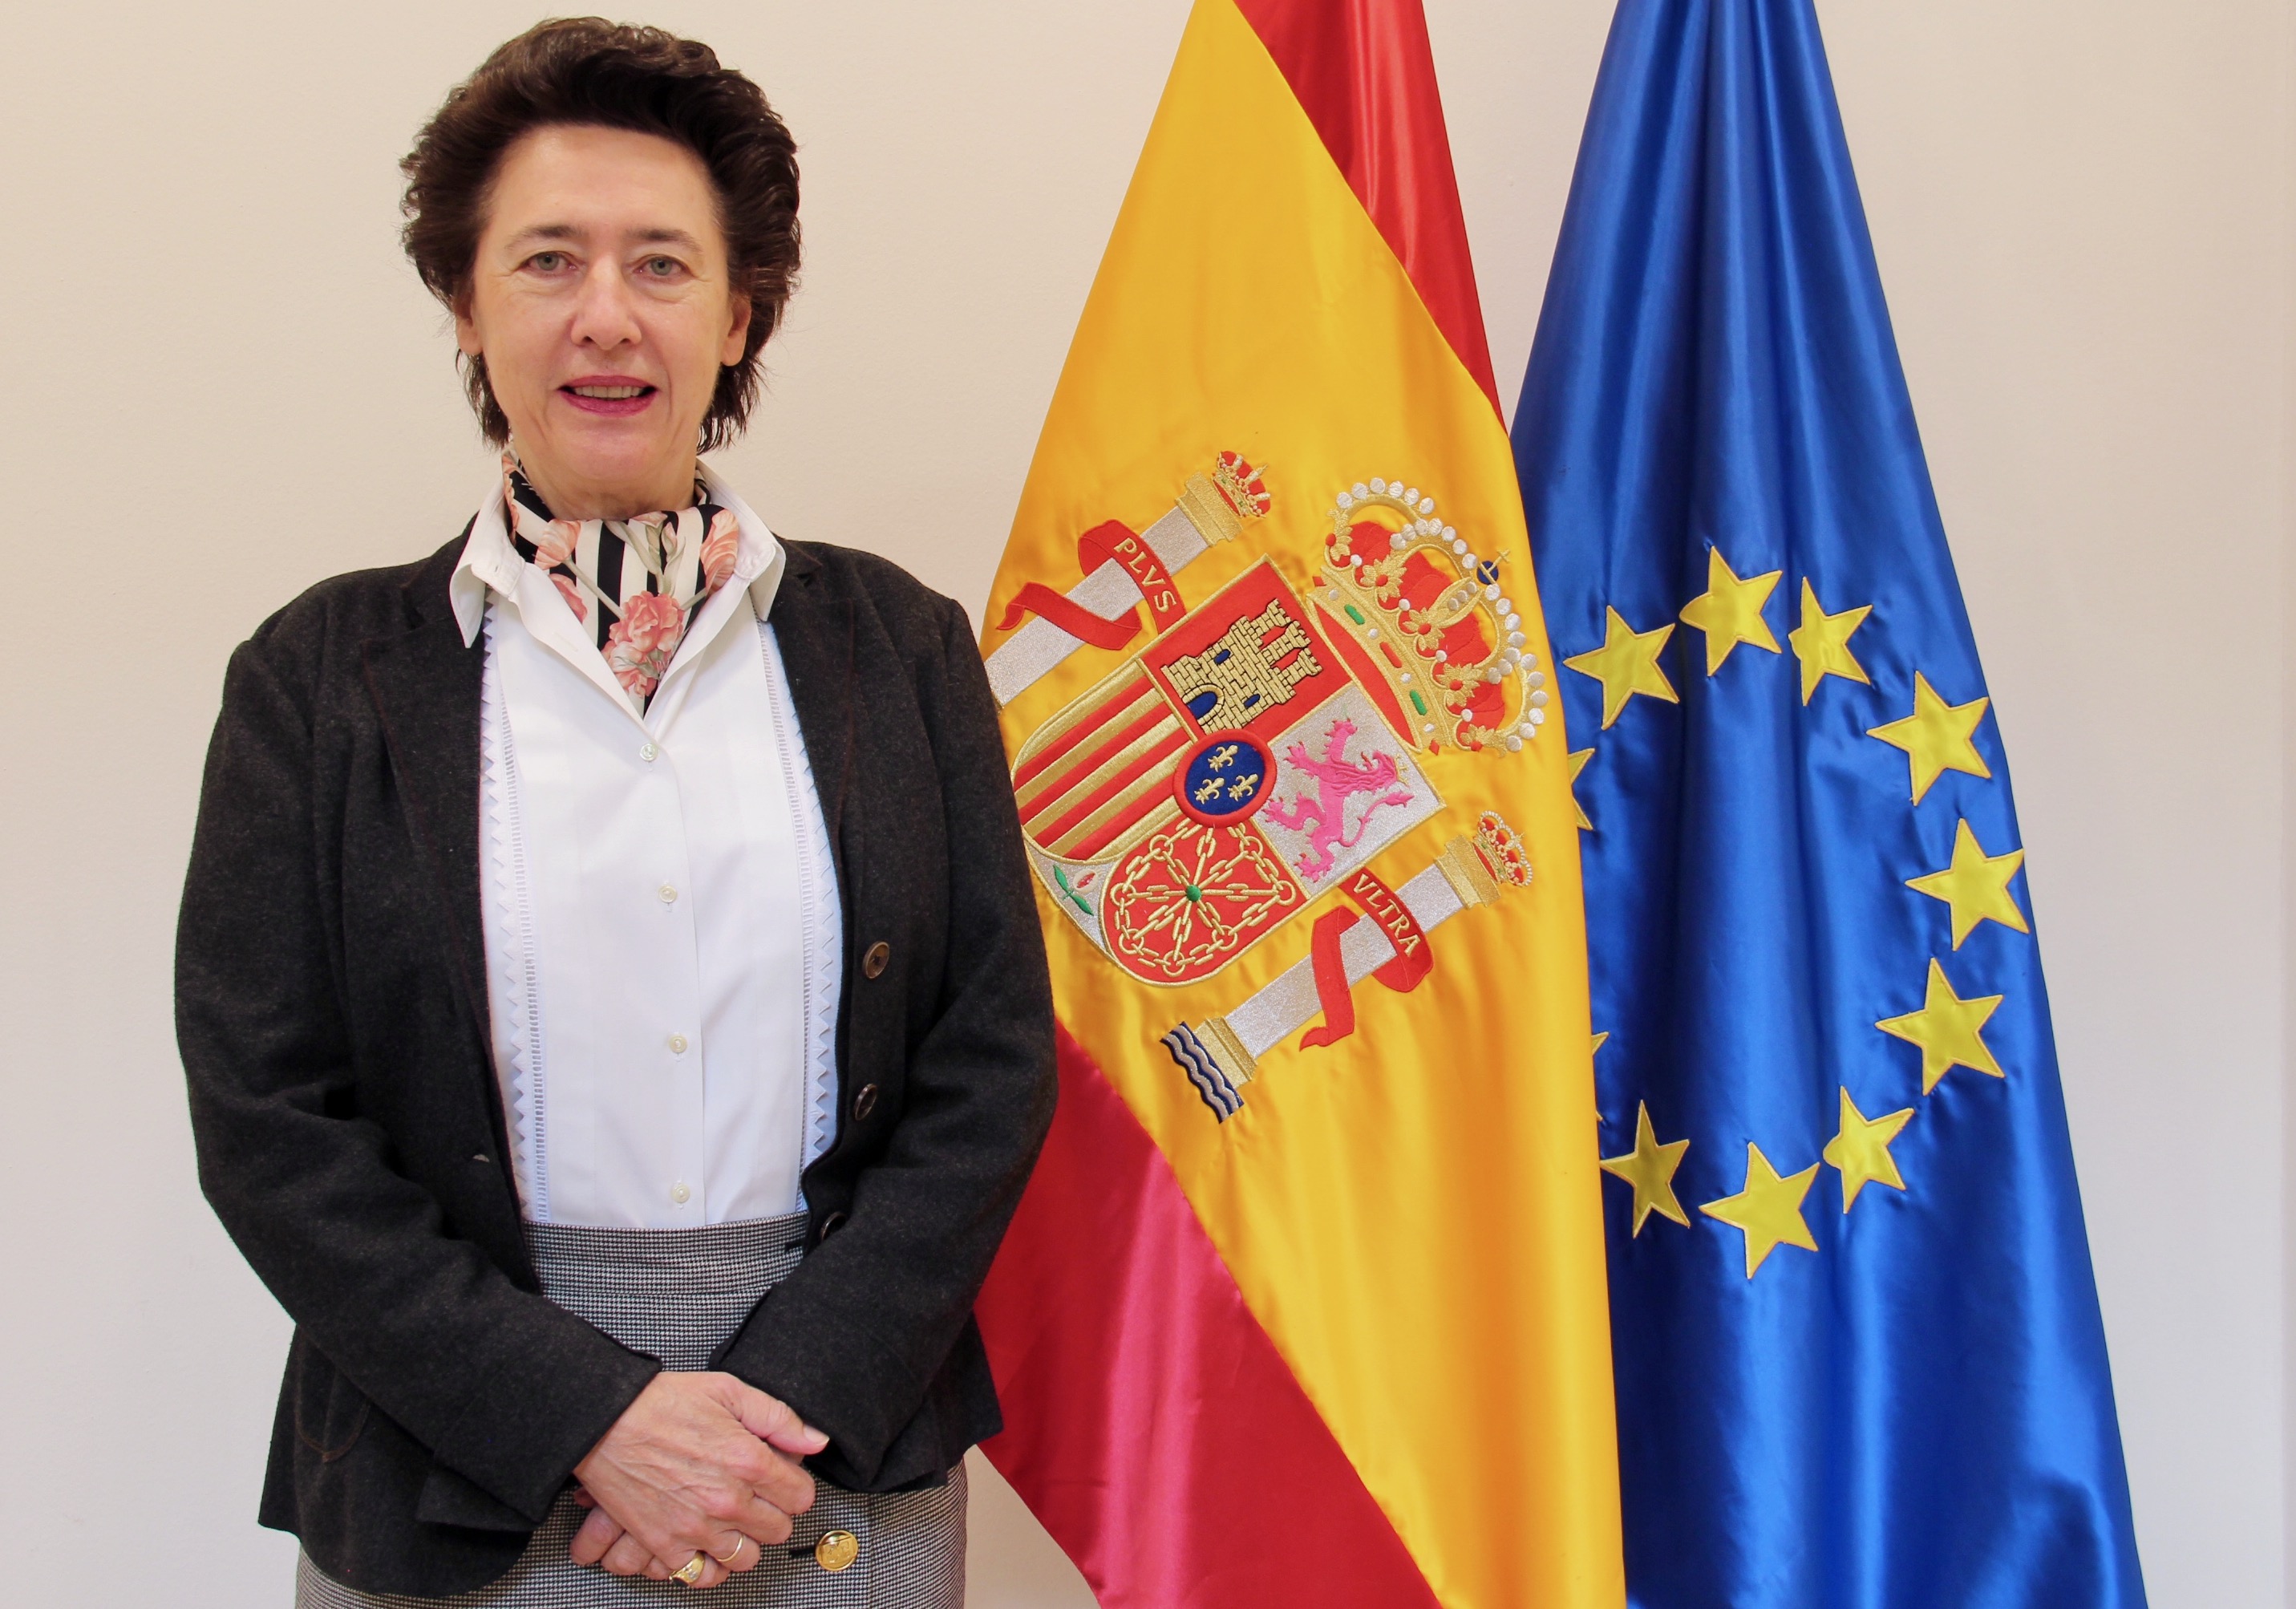 Interview 2: Anunciada Fernández de Córdova, Ambassador of Spain to Hungary